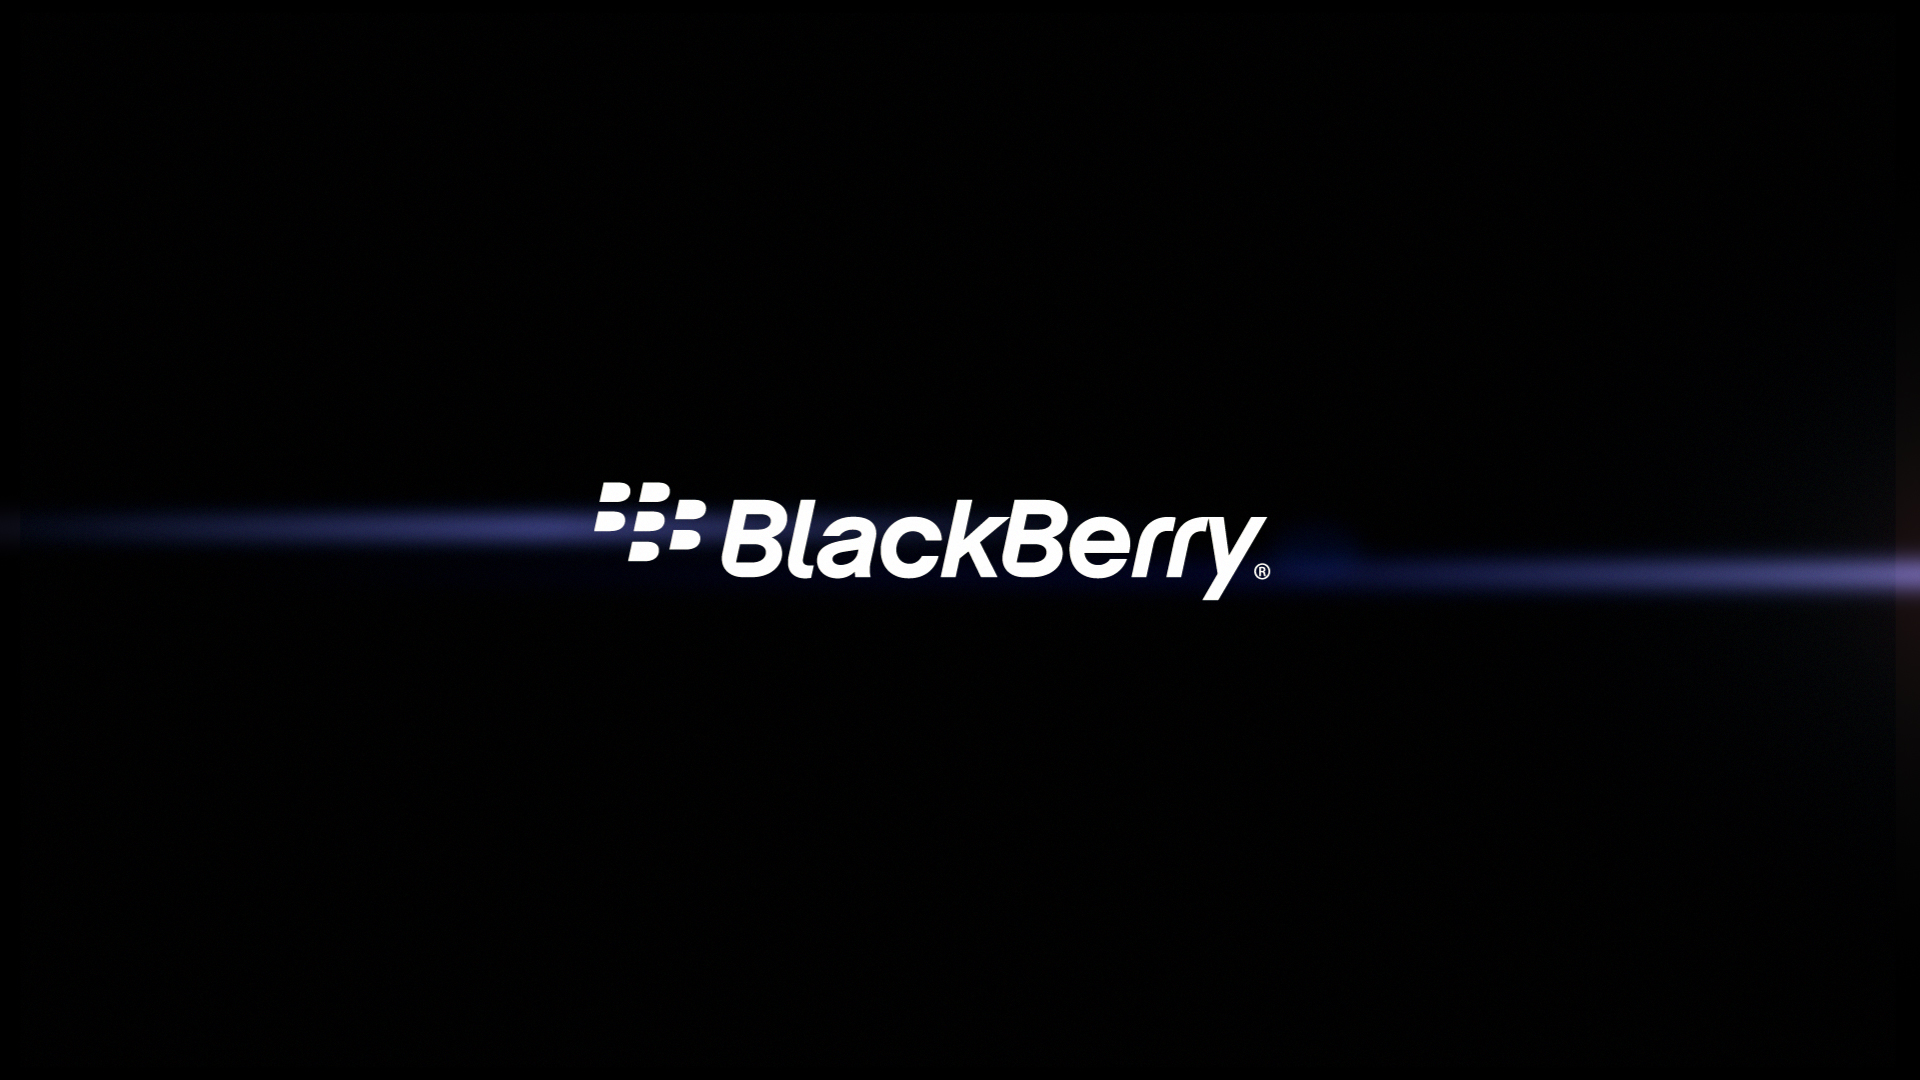 BlackBerry HD Wallpaper - WallpaperSafari